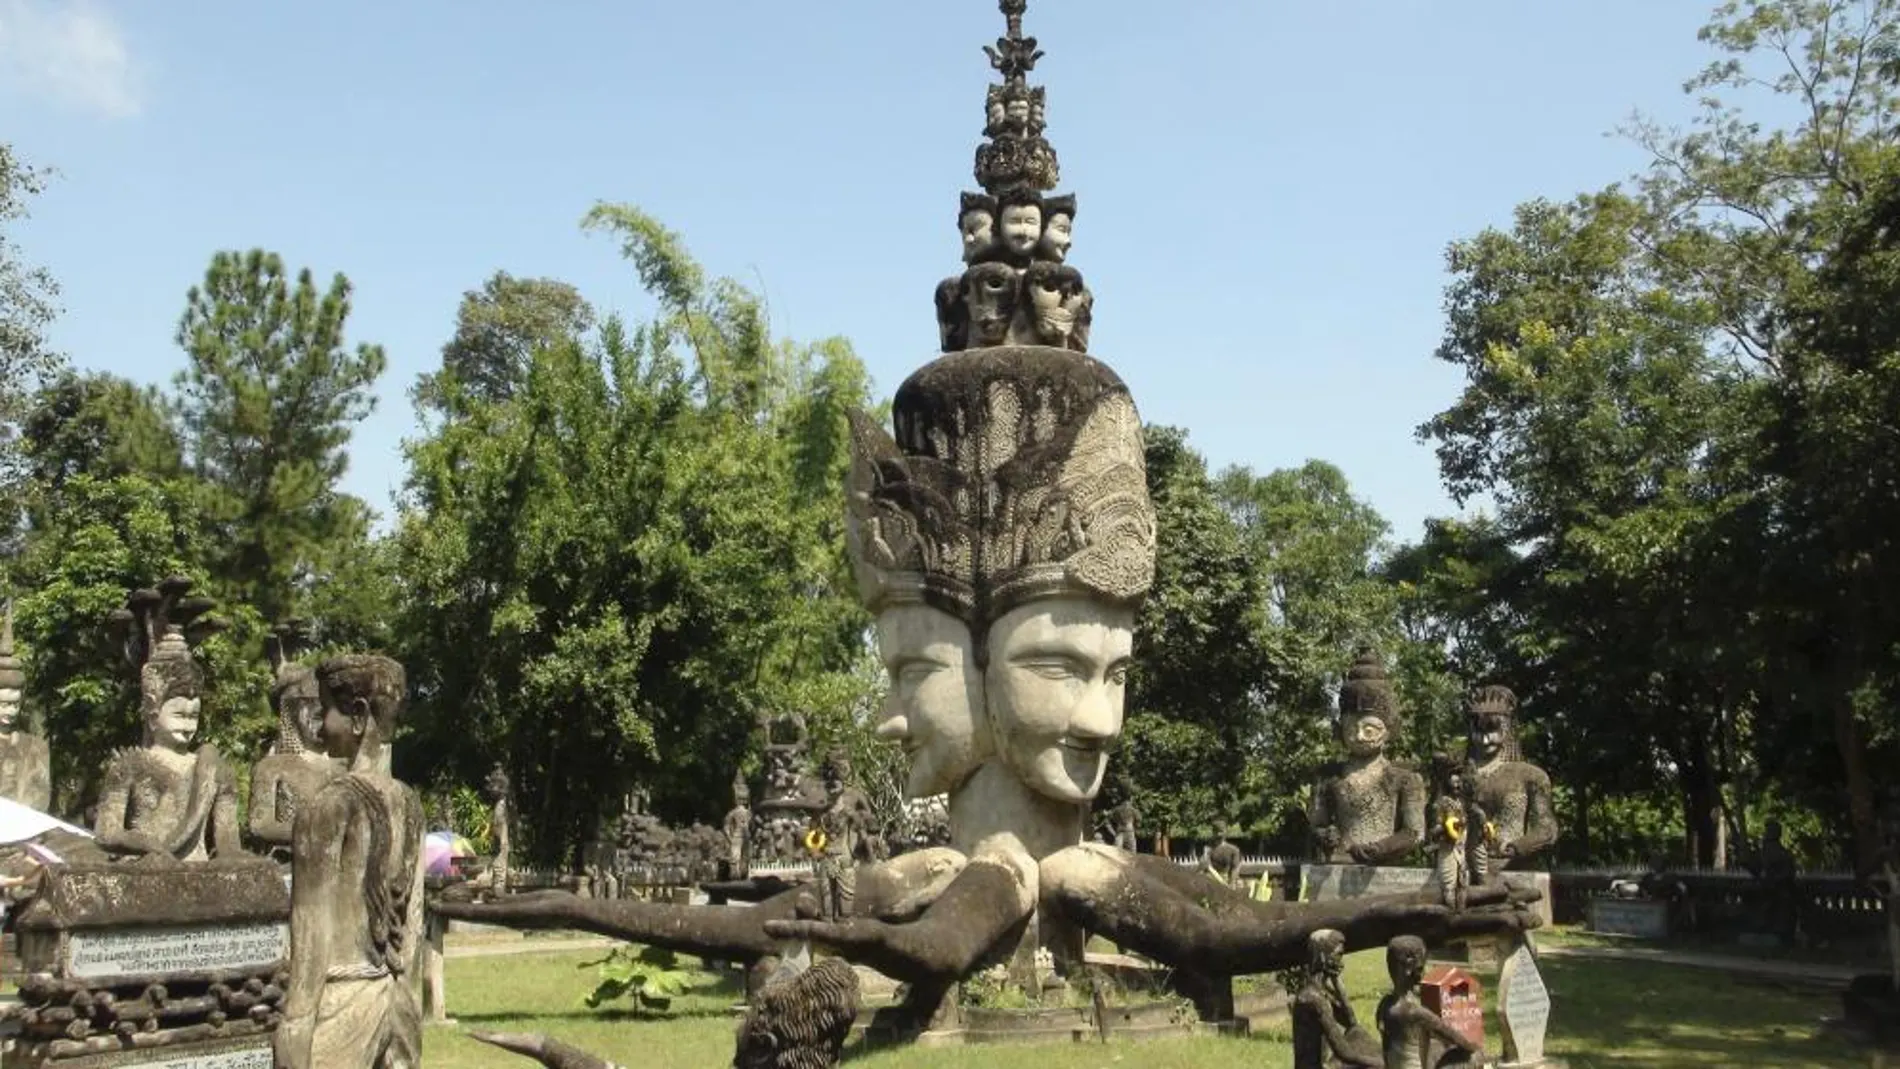 Vista del parque escultórico "Sala Keoku"del artista tailandés Boun Leua Sourirat